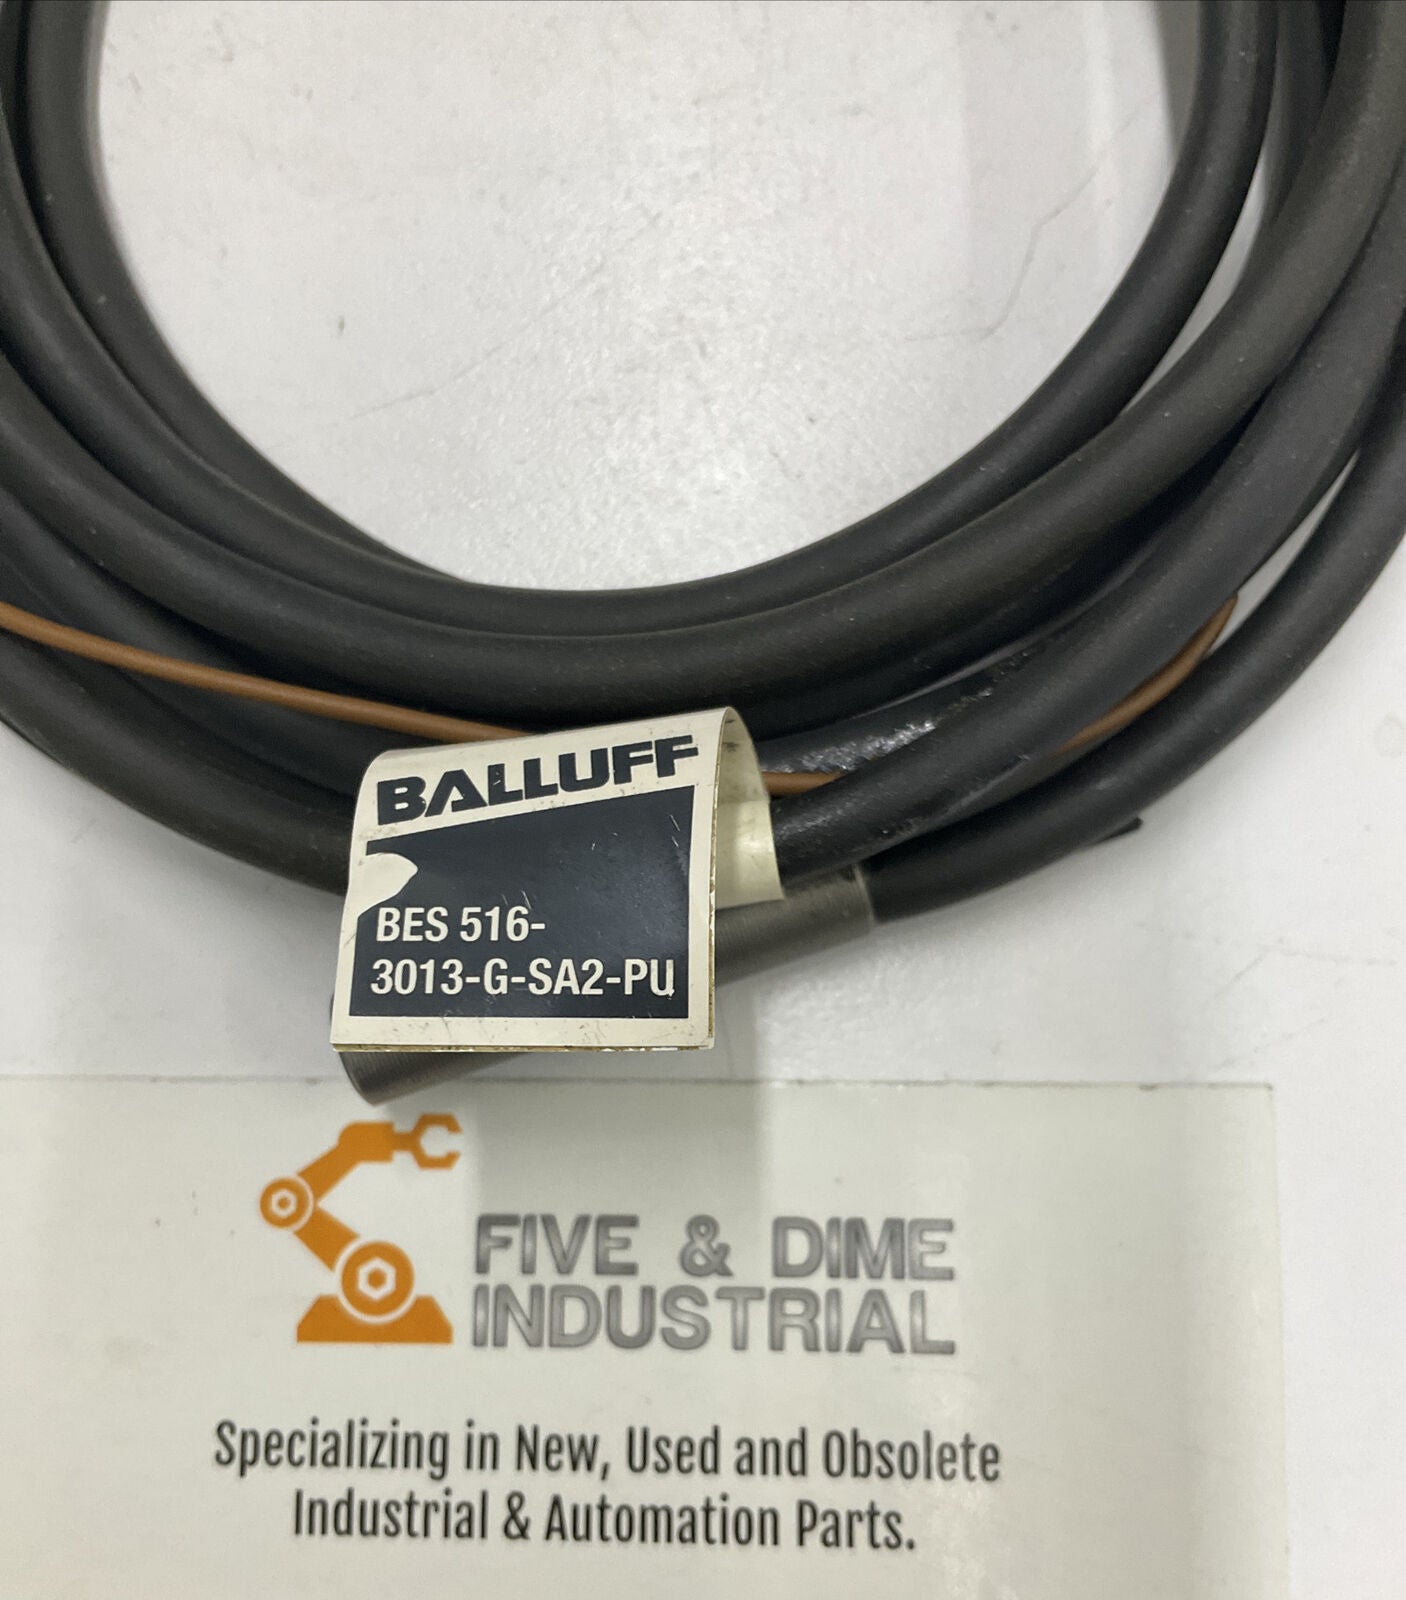 Balluff BES 516-3013-G-SA2-PU Proximity Sensor 2mm 10-30VDC (CL182) - 0